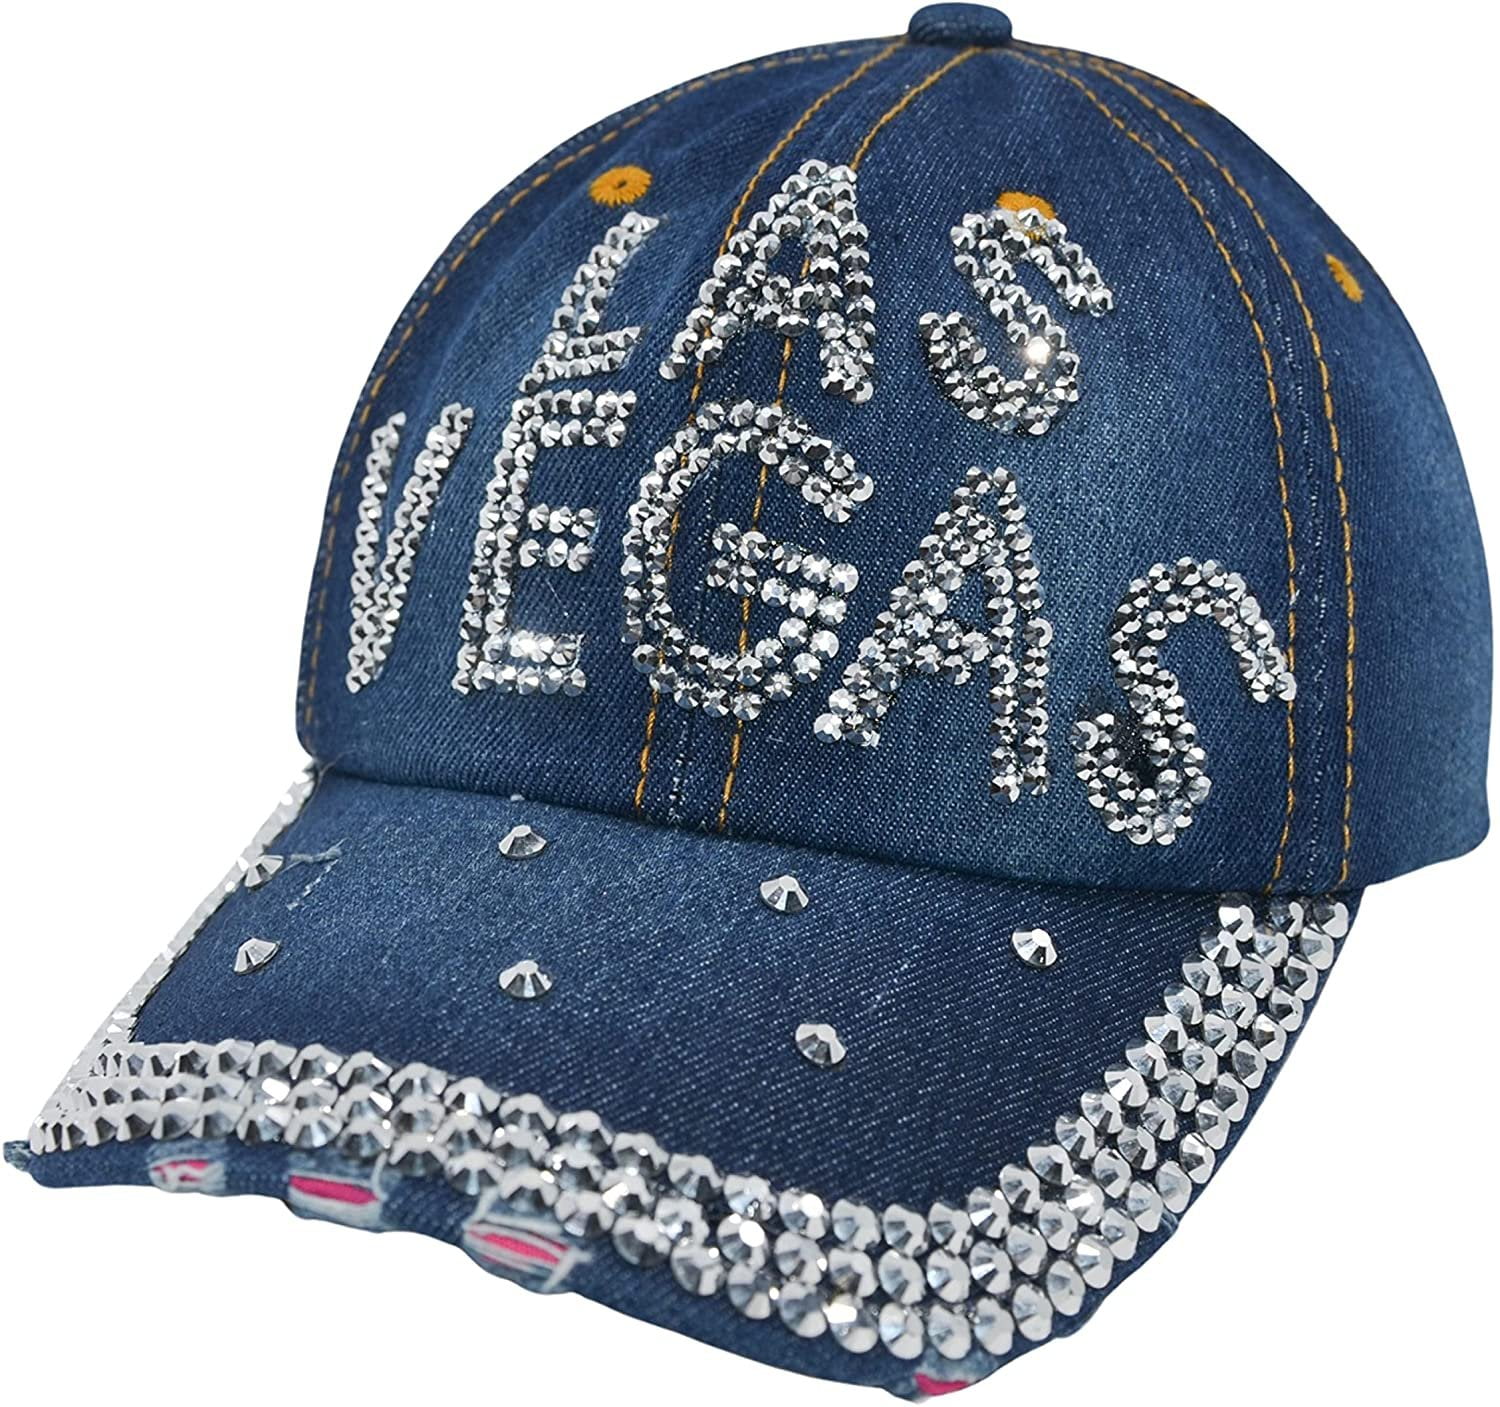 Las Vegas Raiders Womens Cap, Rhinestone Bill, Bling